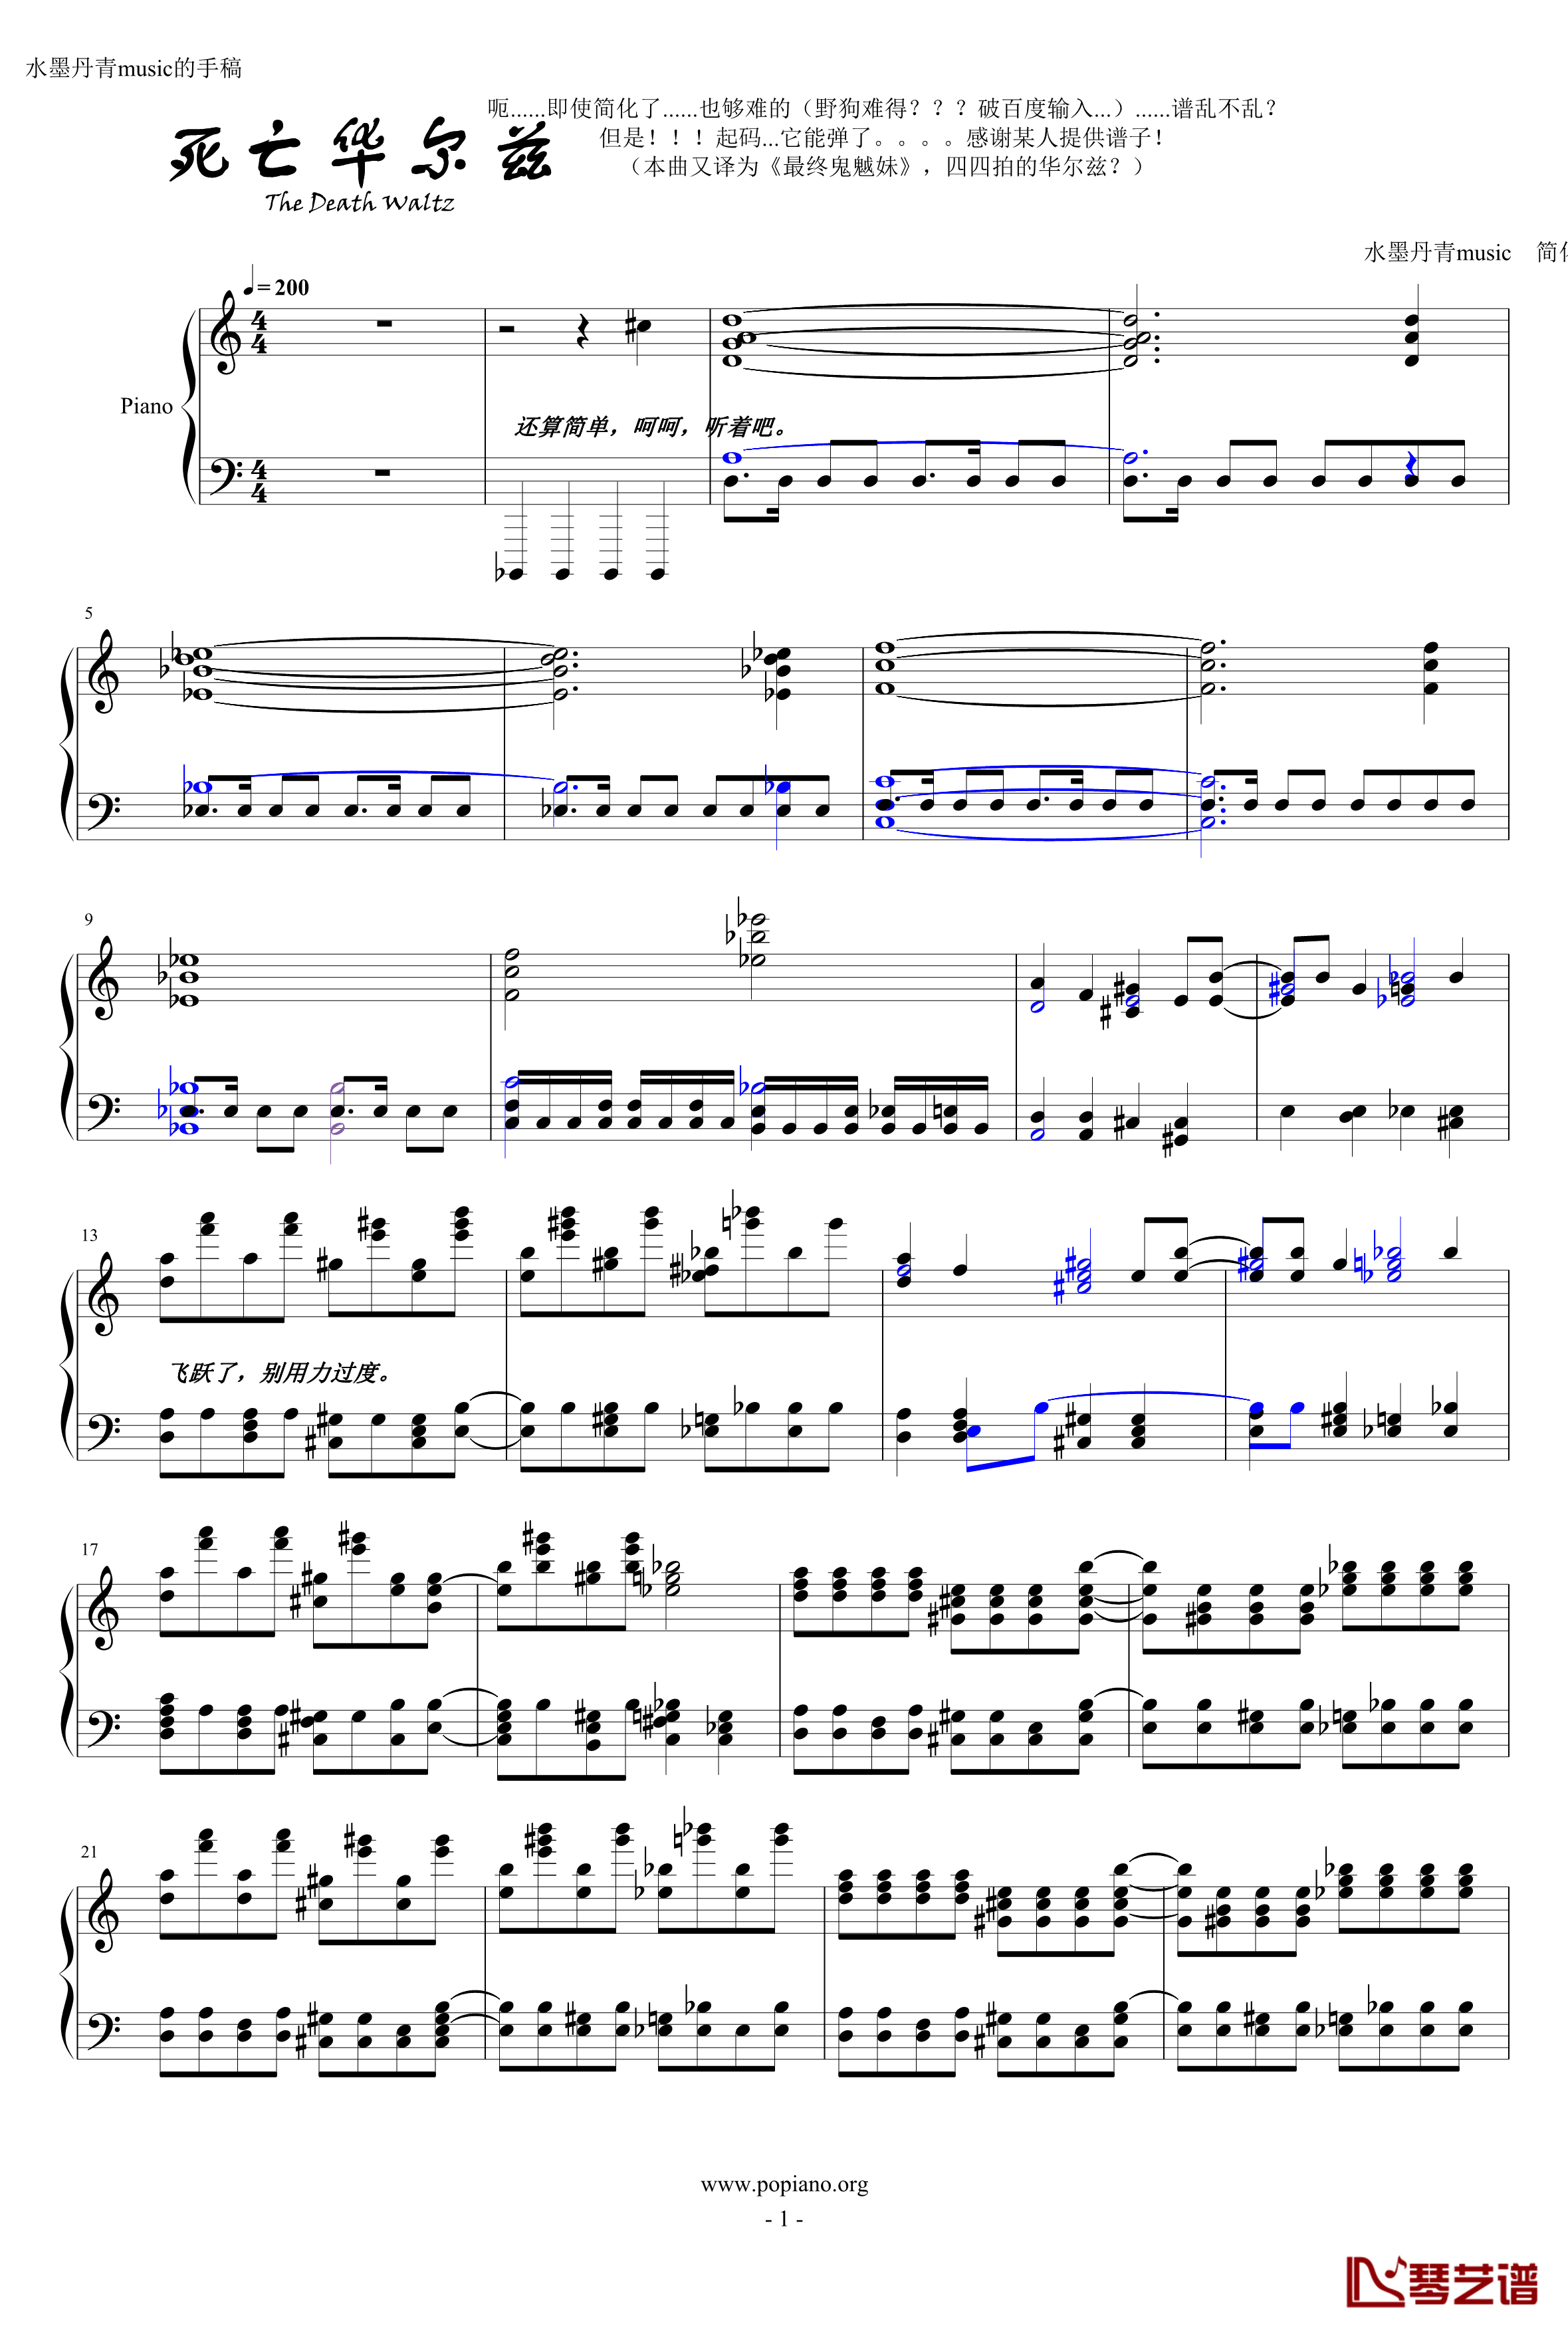 死亡华尔兹钢琴谱-简化版-水墨丹青music1